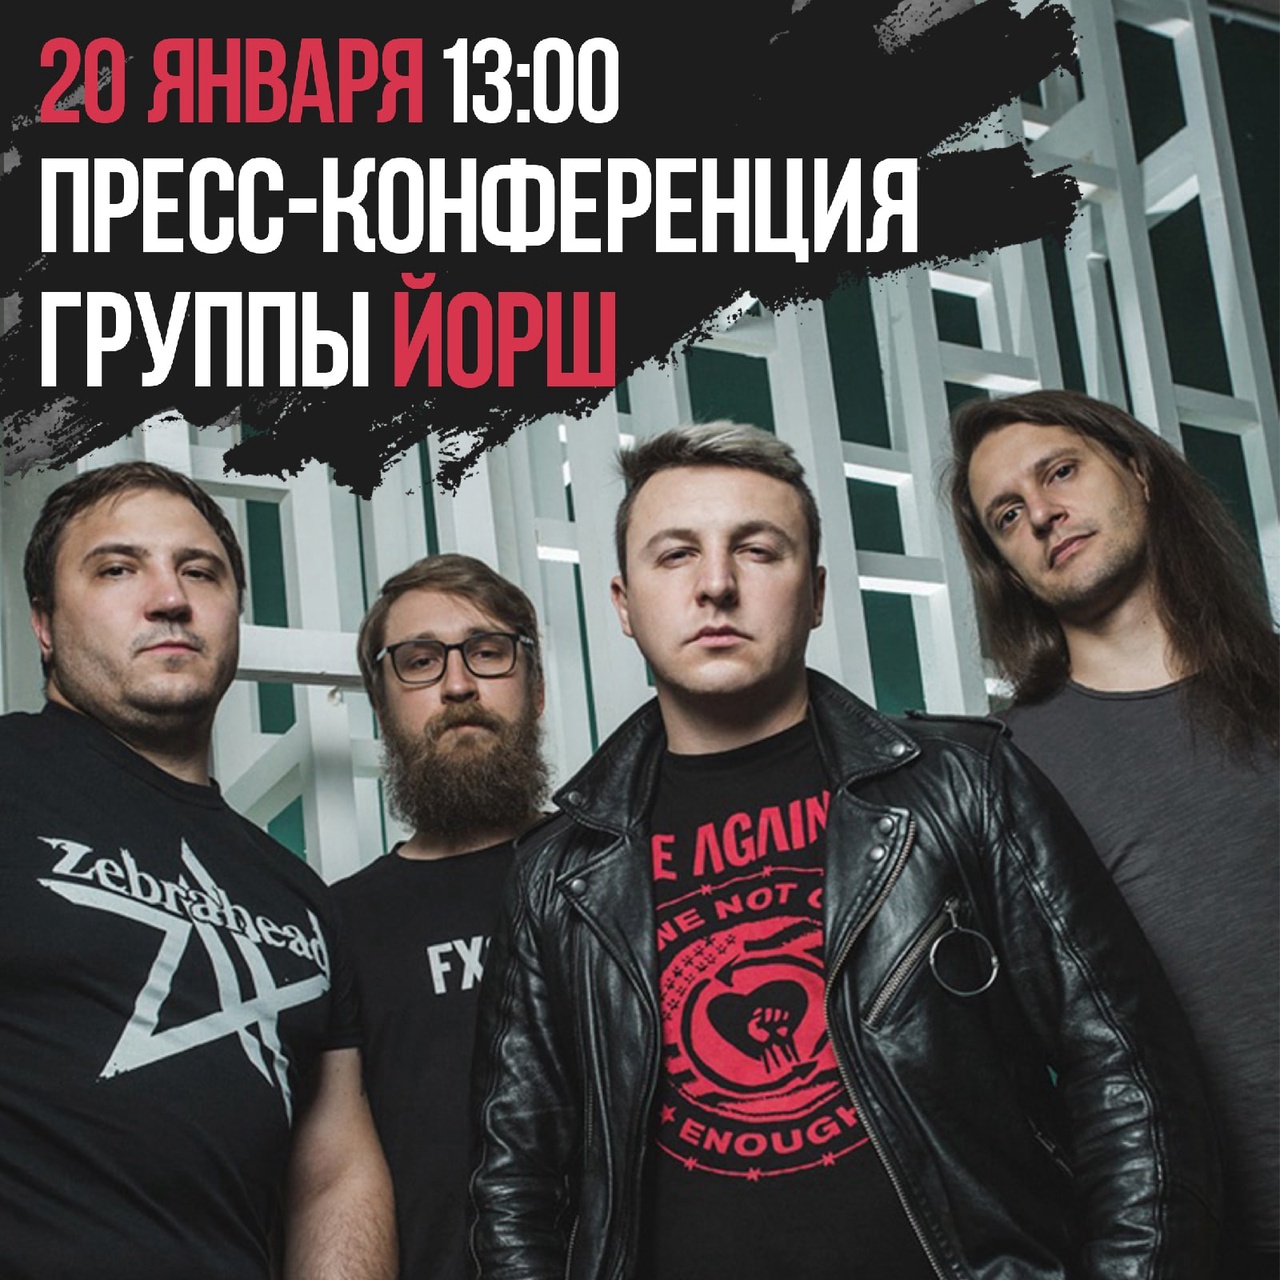 «Национальная служба новостей» вместе с Soyuz Music приглашают вас принять участие в пресс-конференции группы ЙОРШ по случаю выхода альбома «Уже не тот».